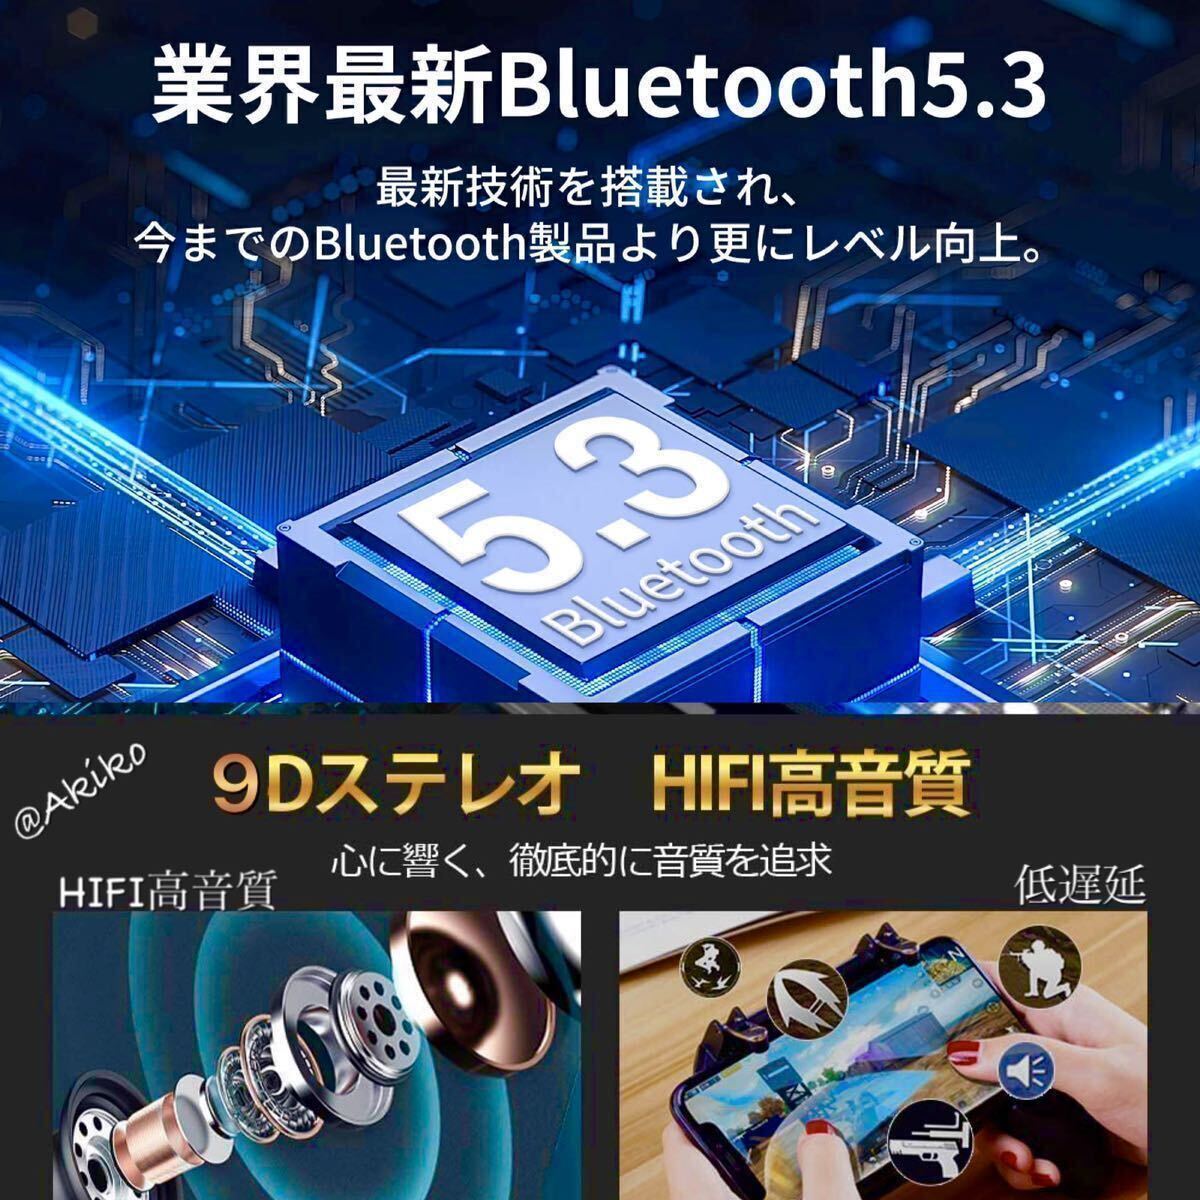 Bluetooth 5.3ワイヤレスイヤホン、バッテリー大容量2200mAh 防水!! iOS アンドロイド対応_画像2